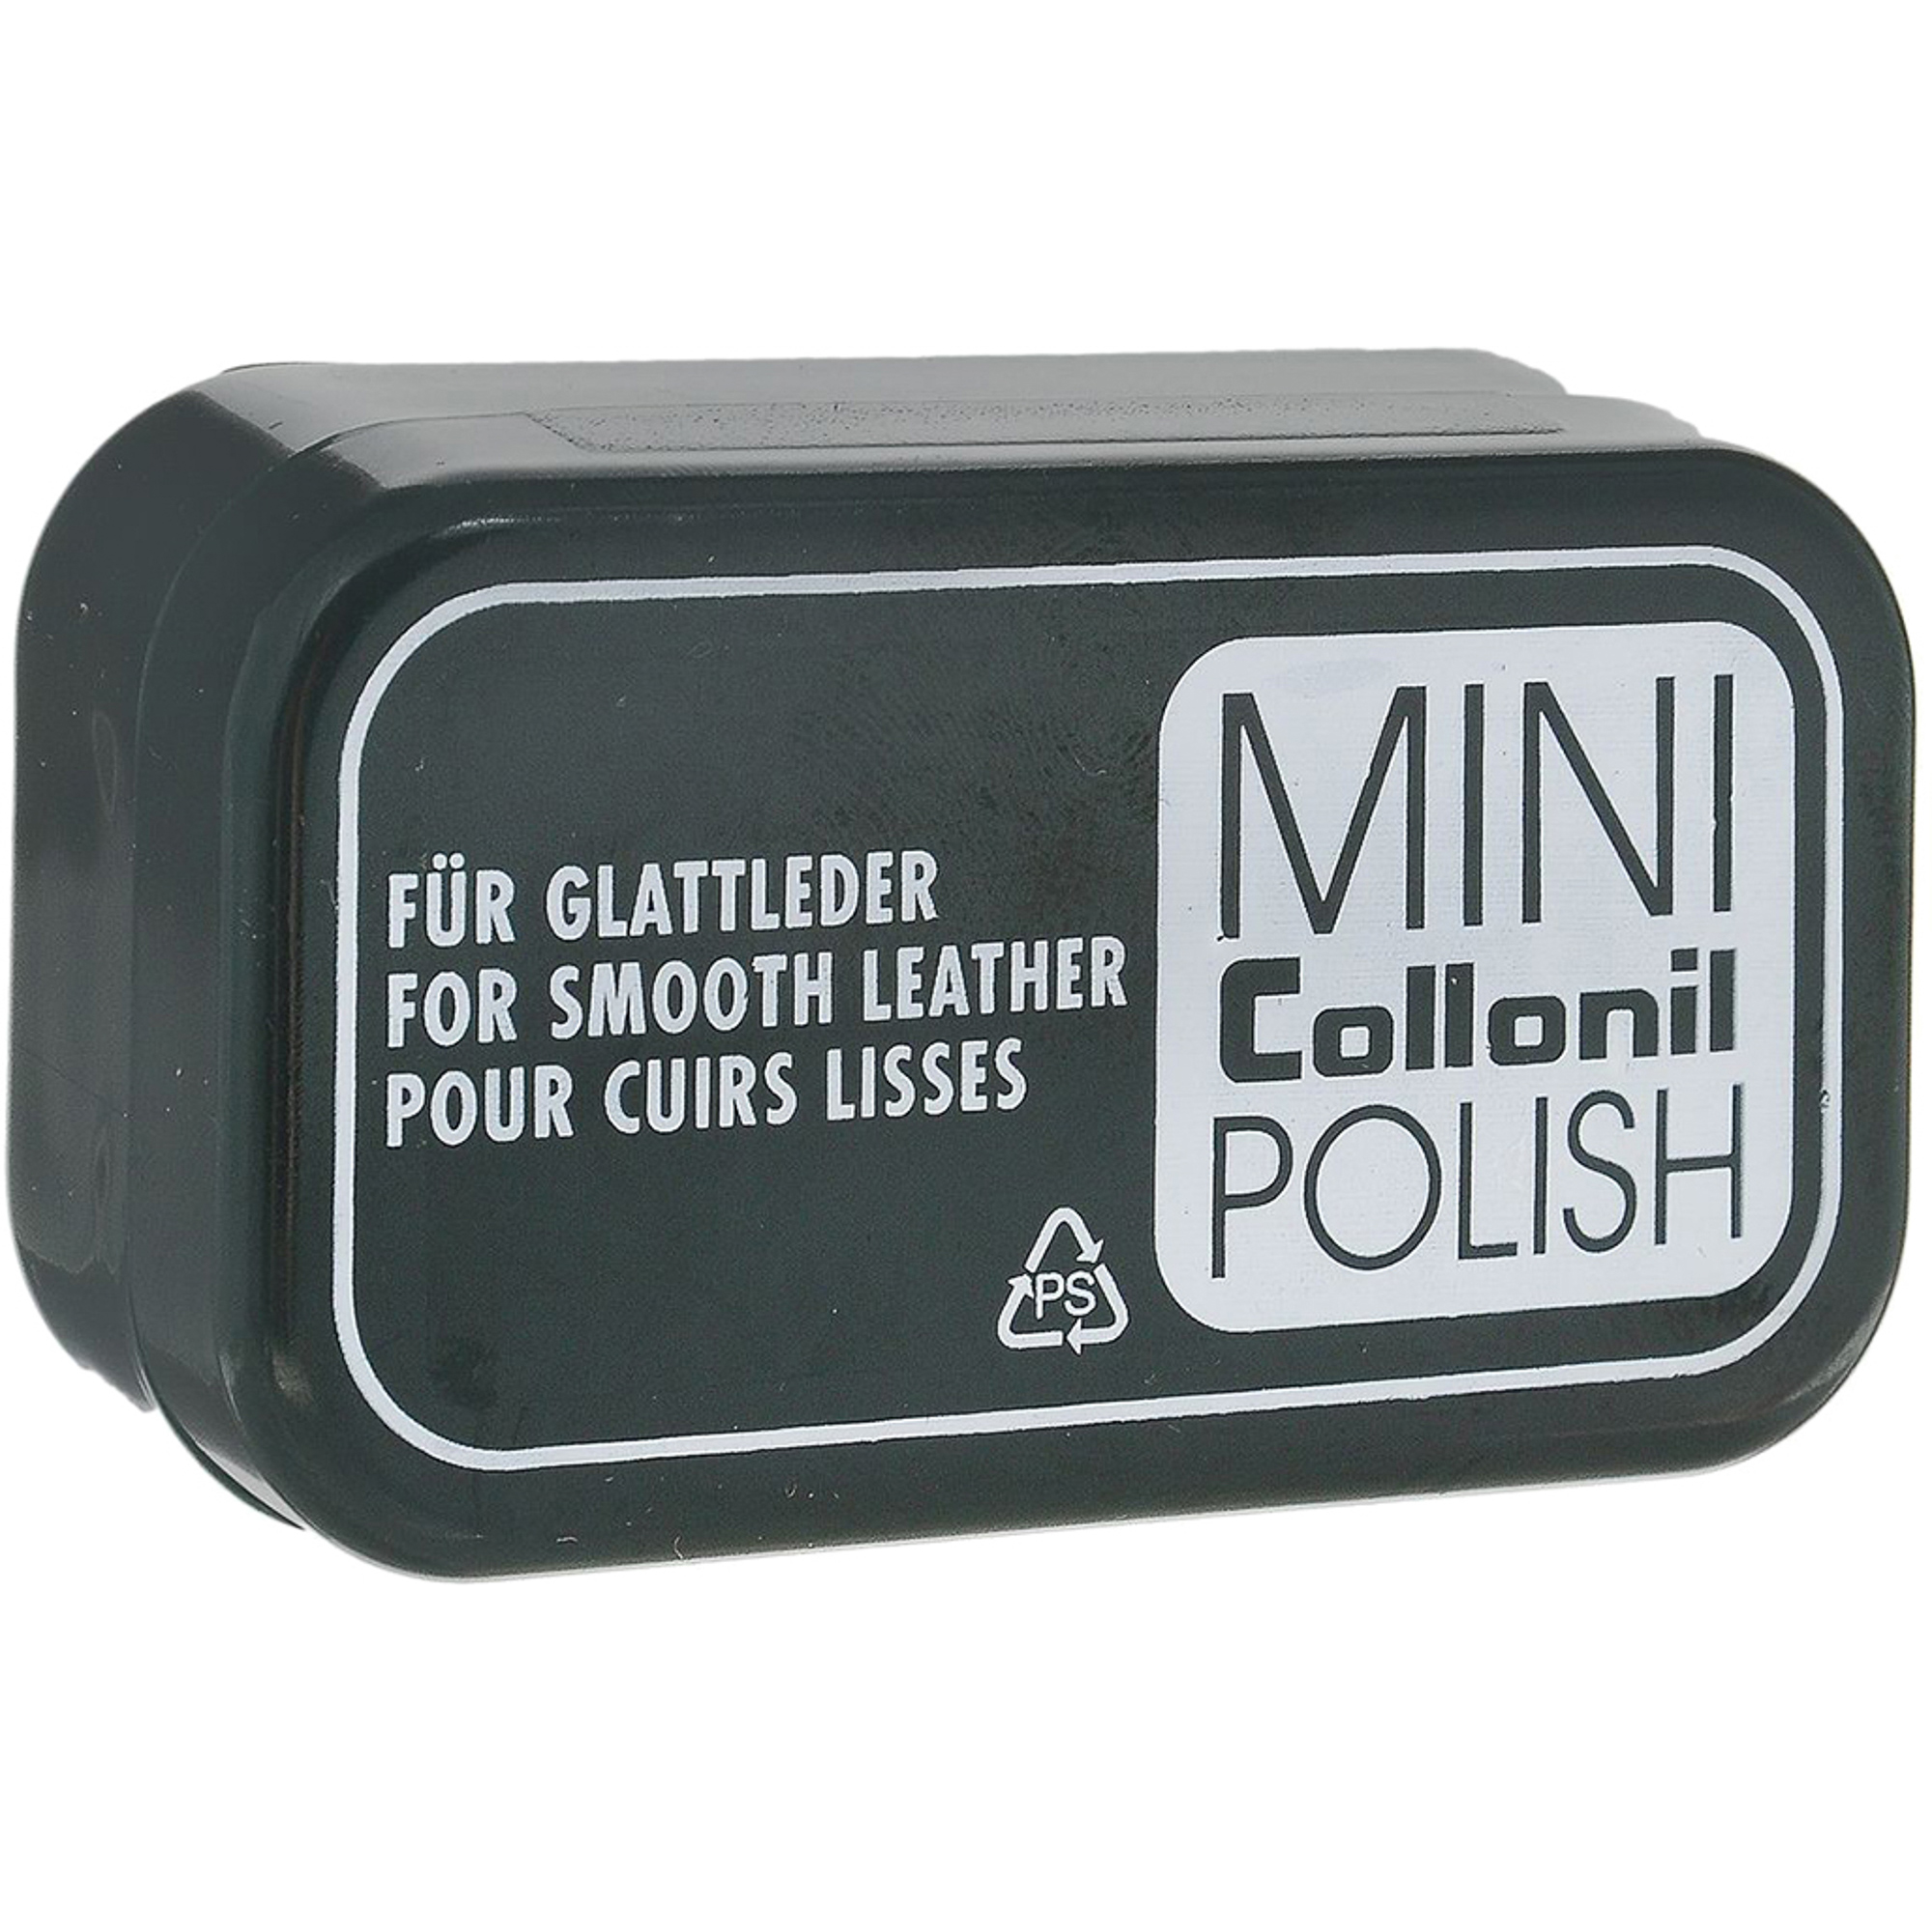 Губка для полировки Collonil Mini Polish губка для мойки и полировки в микрофибре автомобильная 13 х 8 х 3 5 см